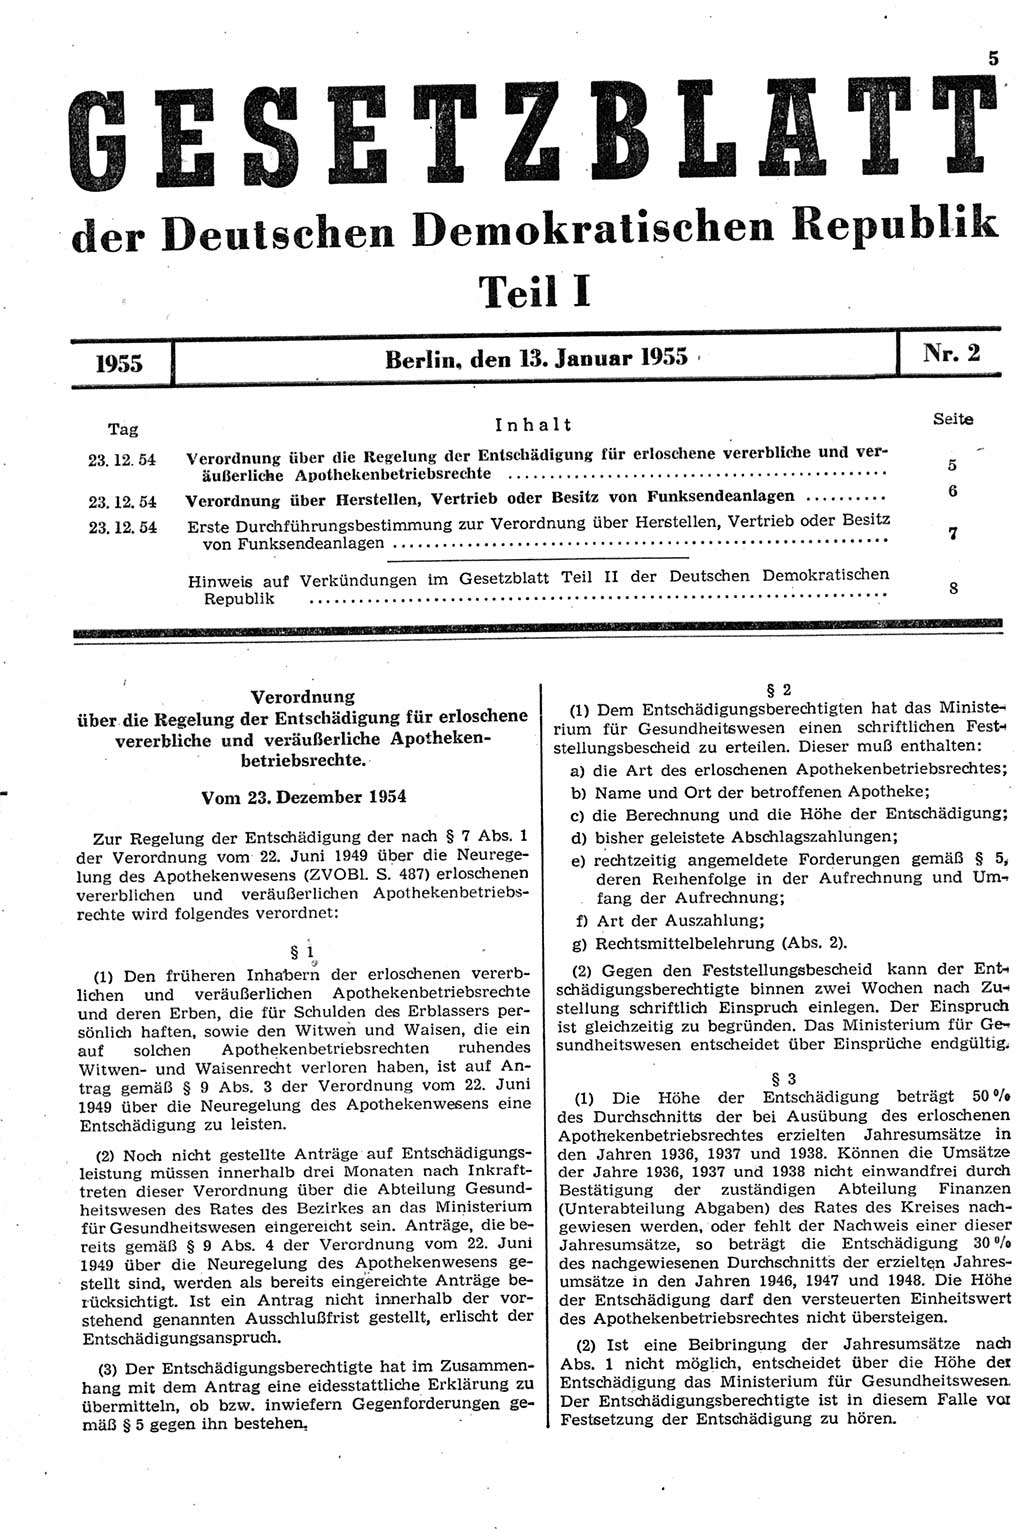 Gesetzblatt (GBl.) der Deutschen Demokratischen Republik (DDR) Teil Ⅰ 1955, Seite 5 (GBl. DDR Ⅰ 1955, S. 5)